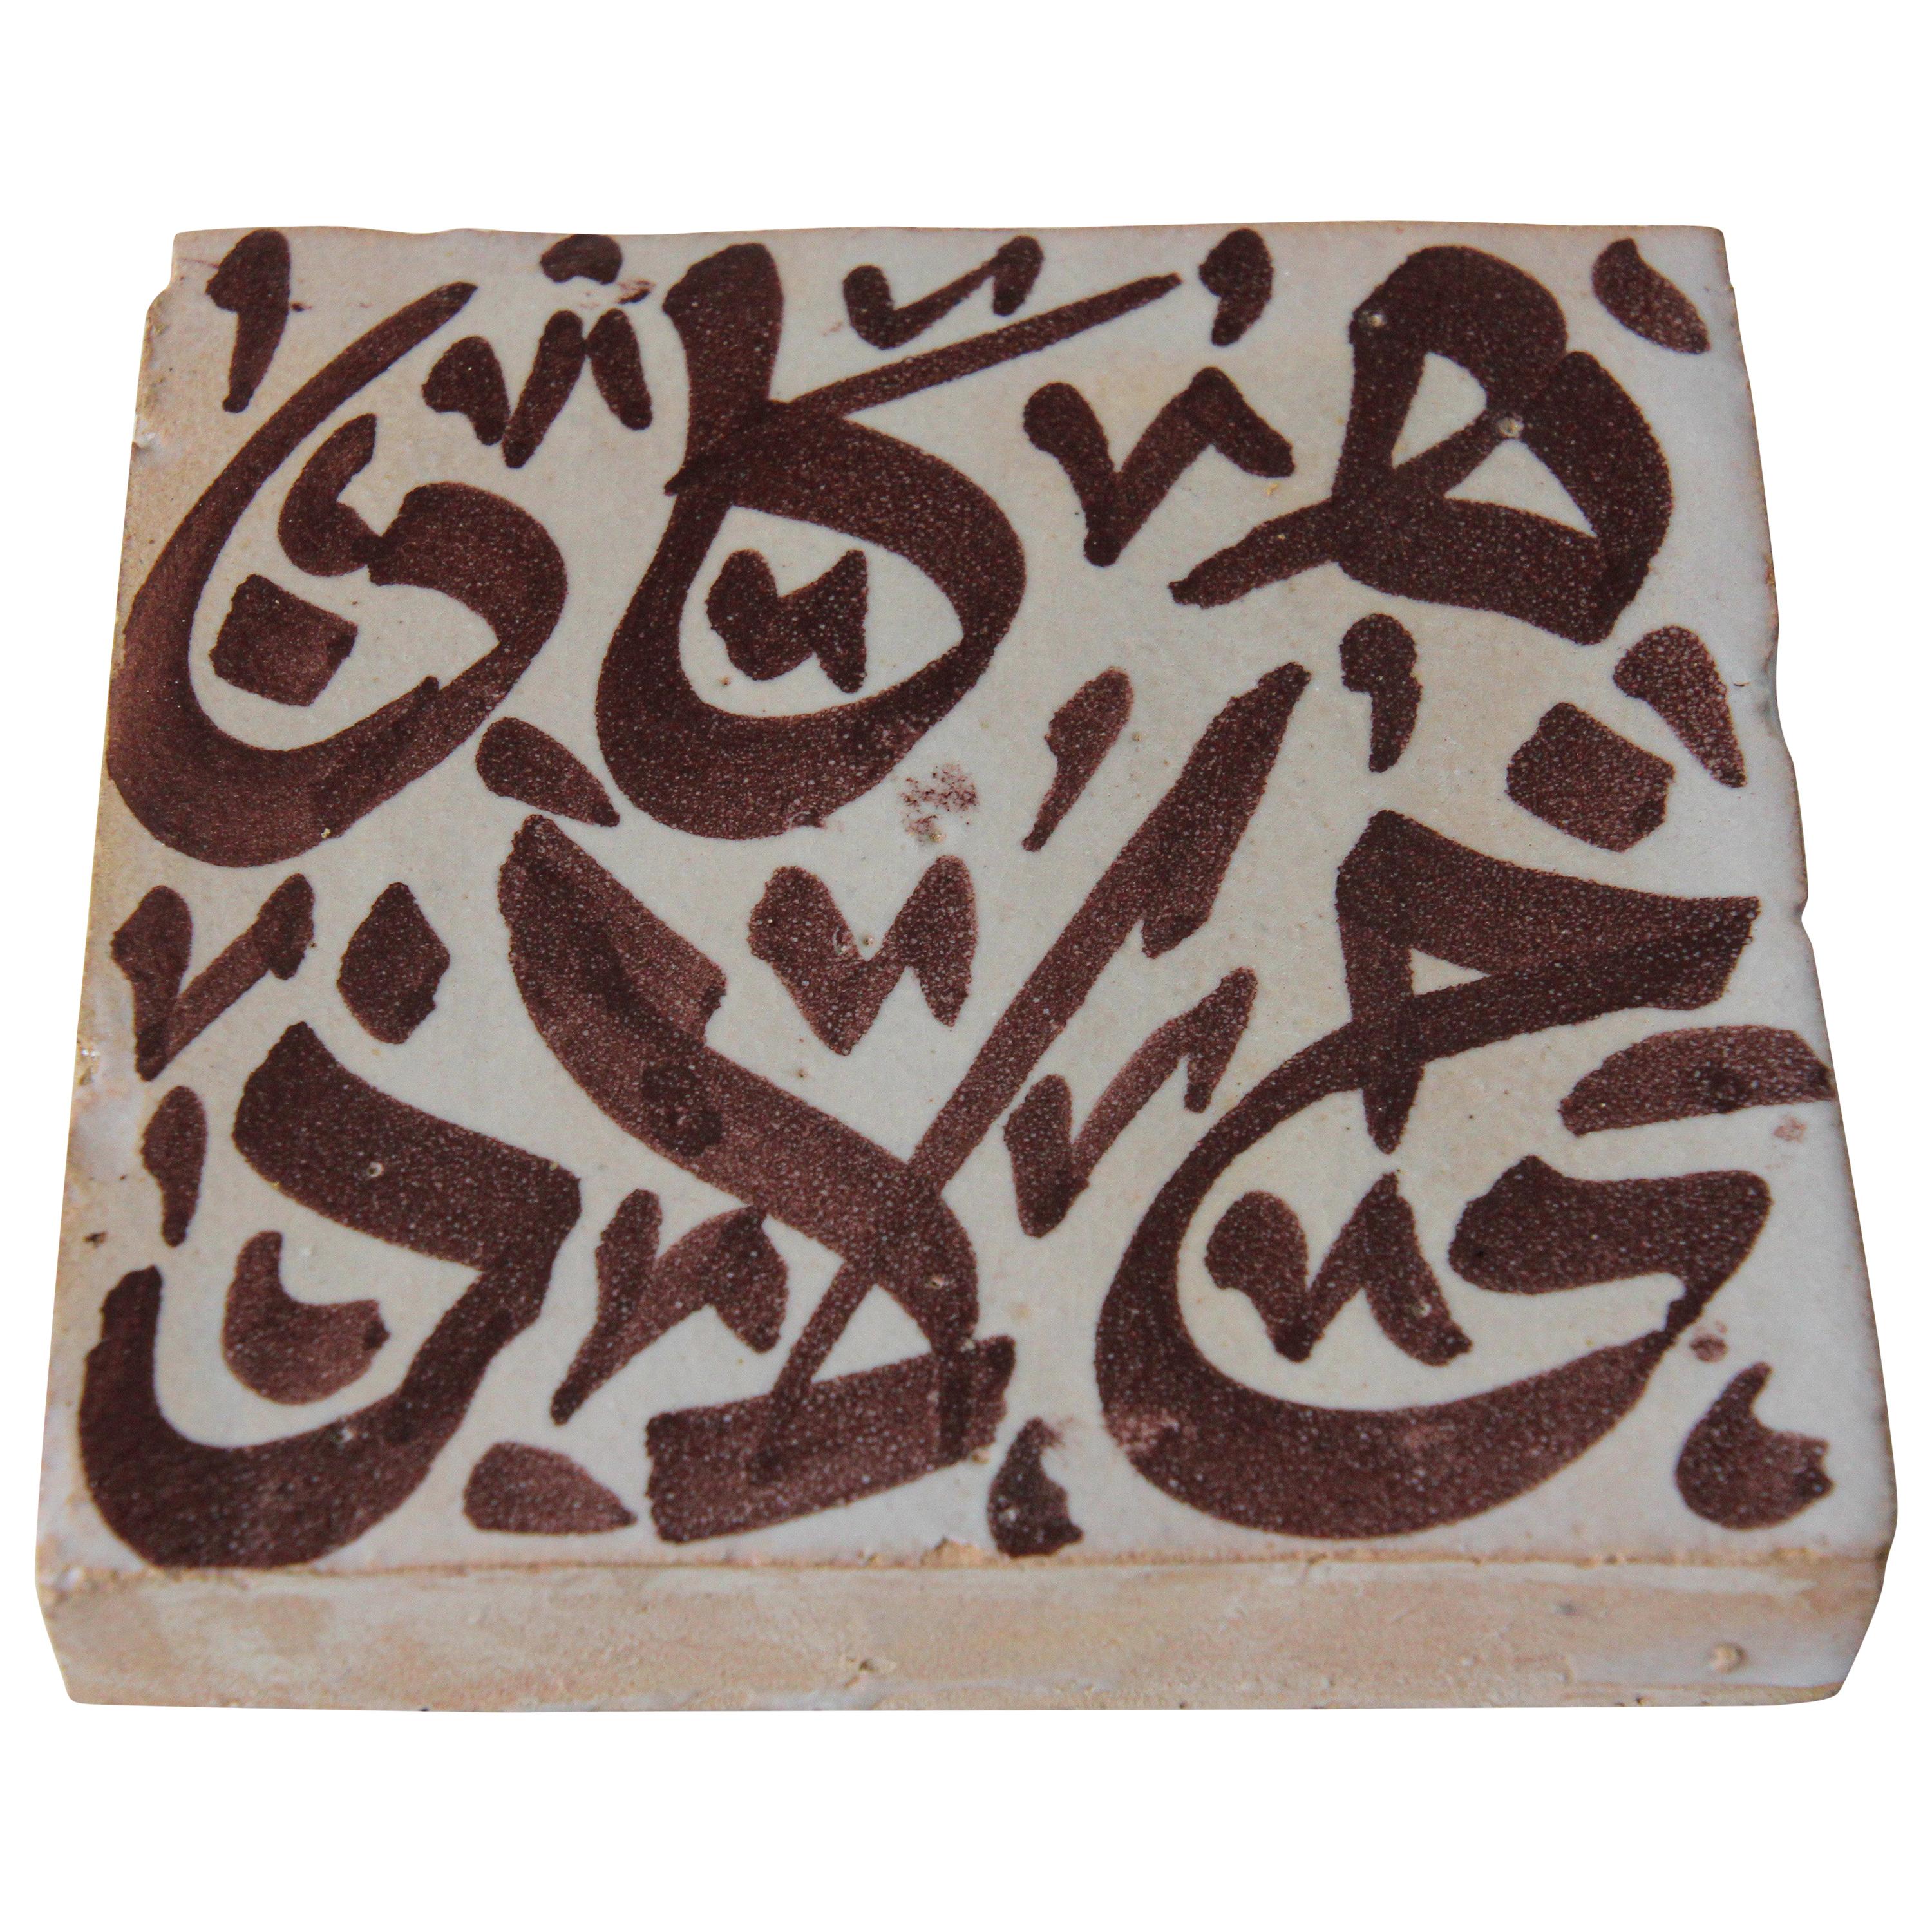 Carreau mauresque avec écriture arabe brune